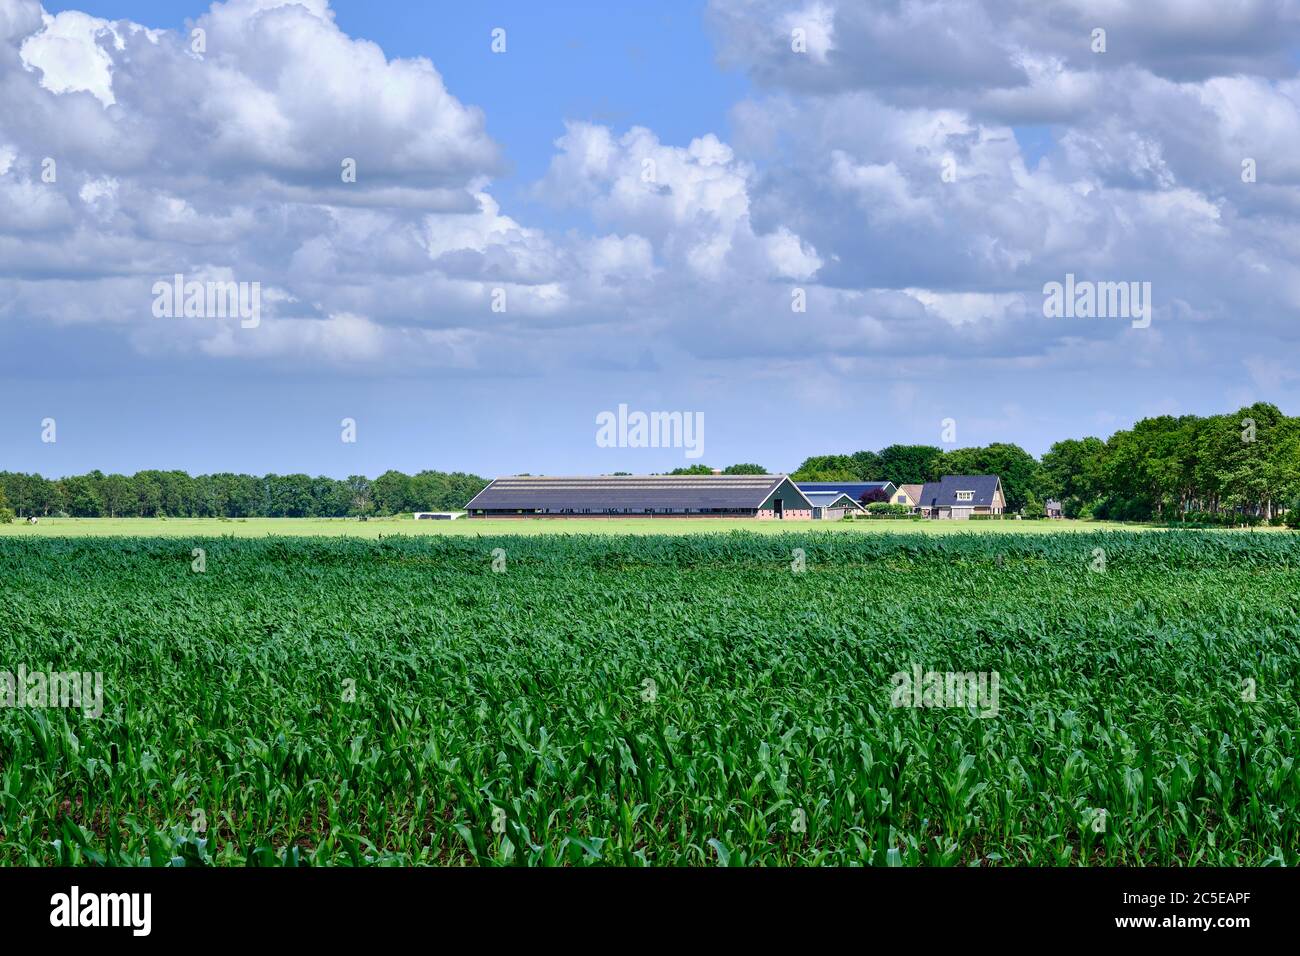 Eine niederländische Viehzucht und ein Wohnzimmer im Vordergrund ein grünes Maisfeld und Gras Ackerland mit weißen Wolken auf einem blauen Himmel. Ureterp, Friesland Stockfoto